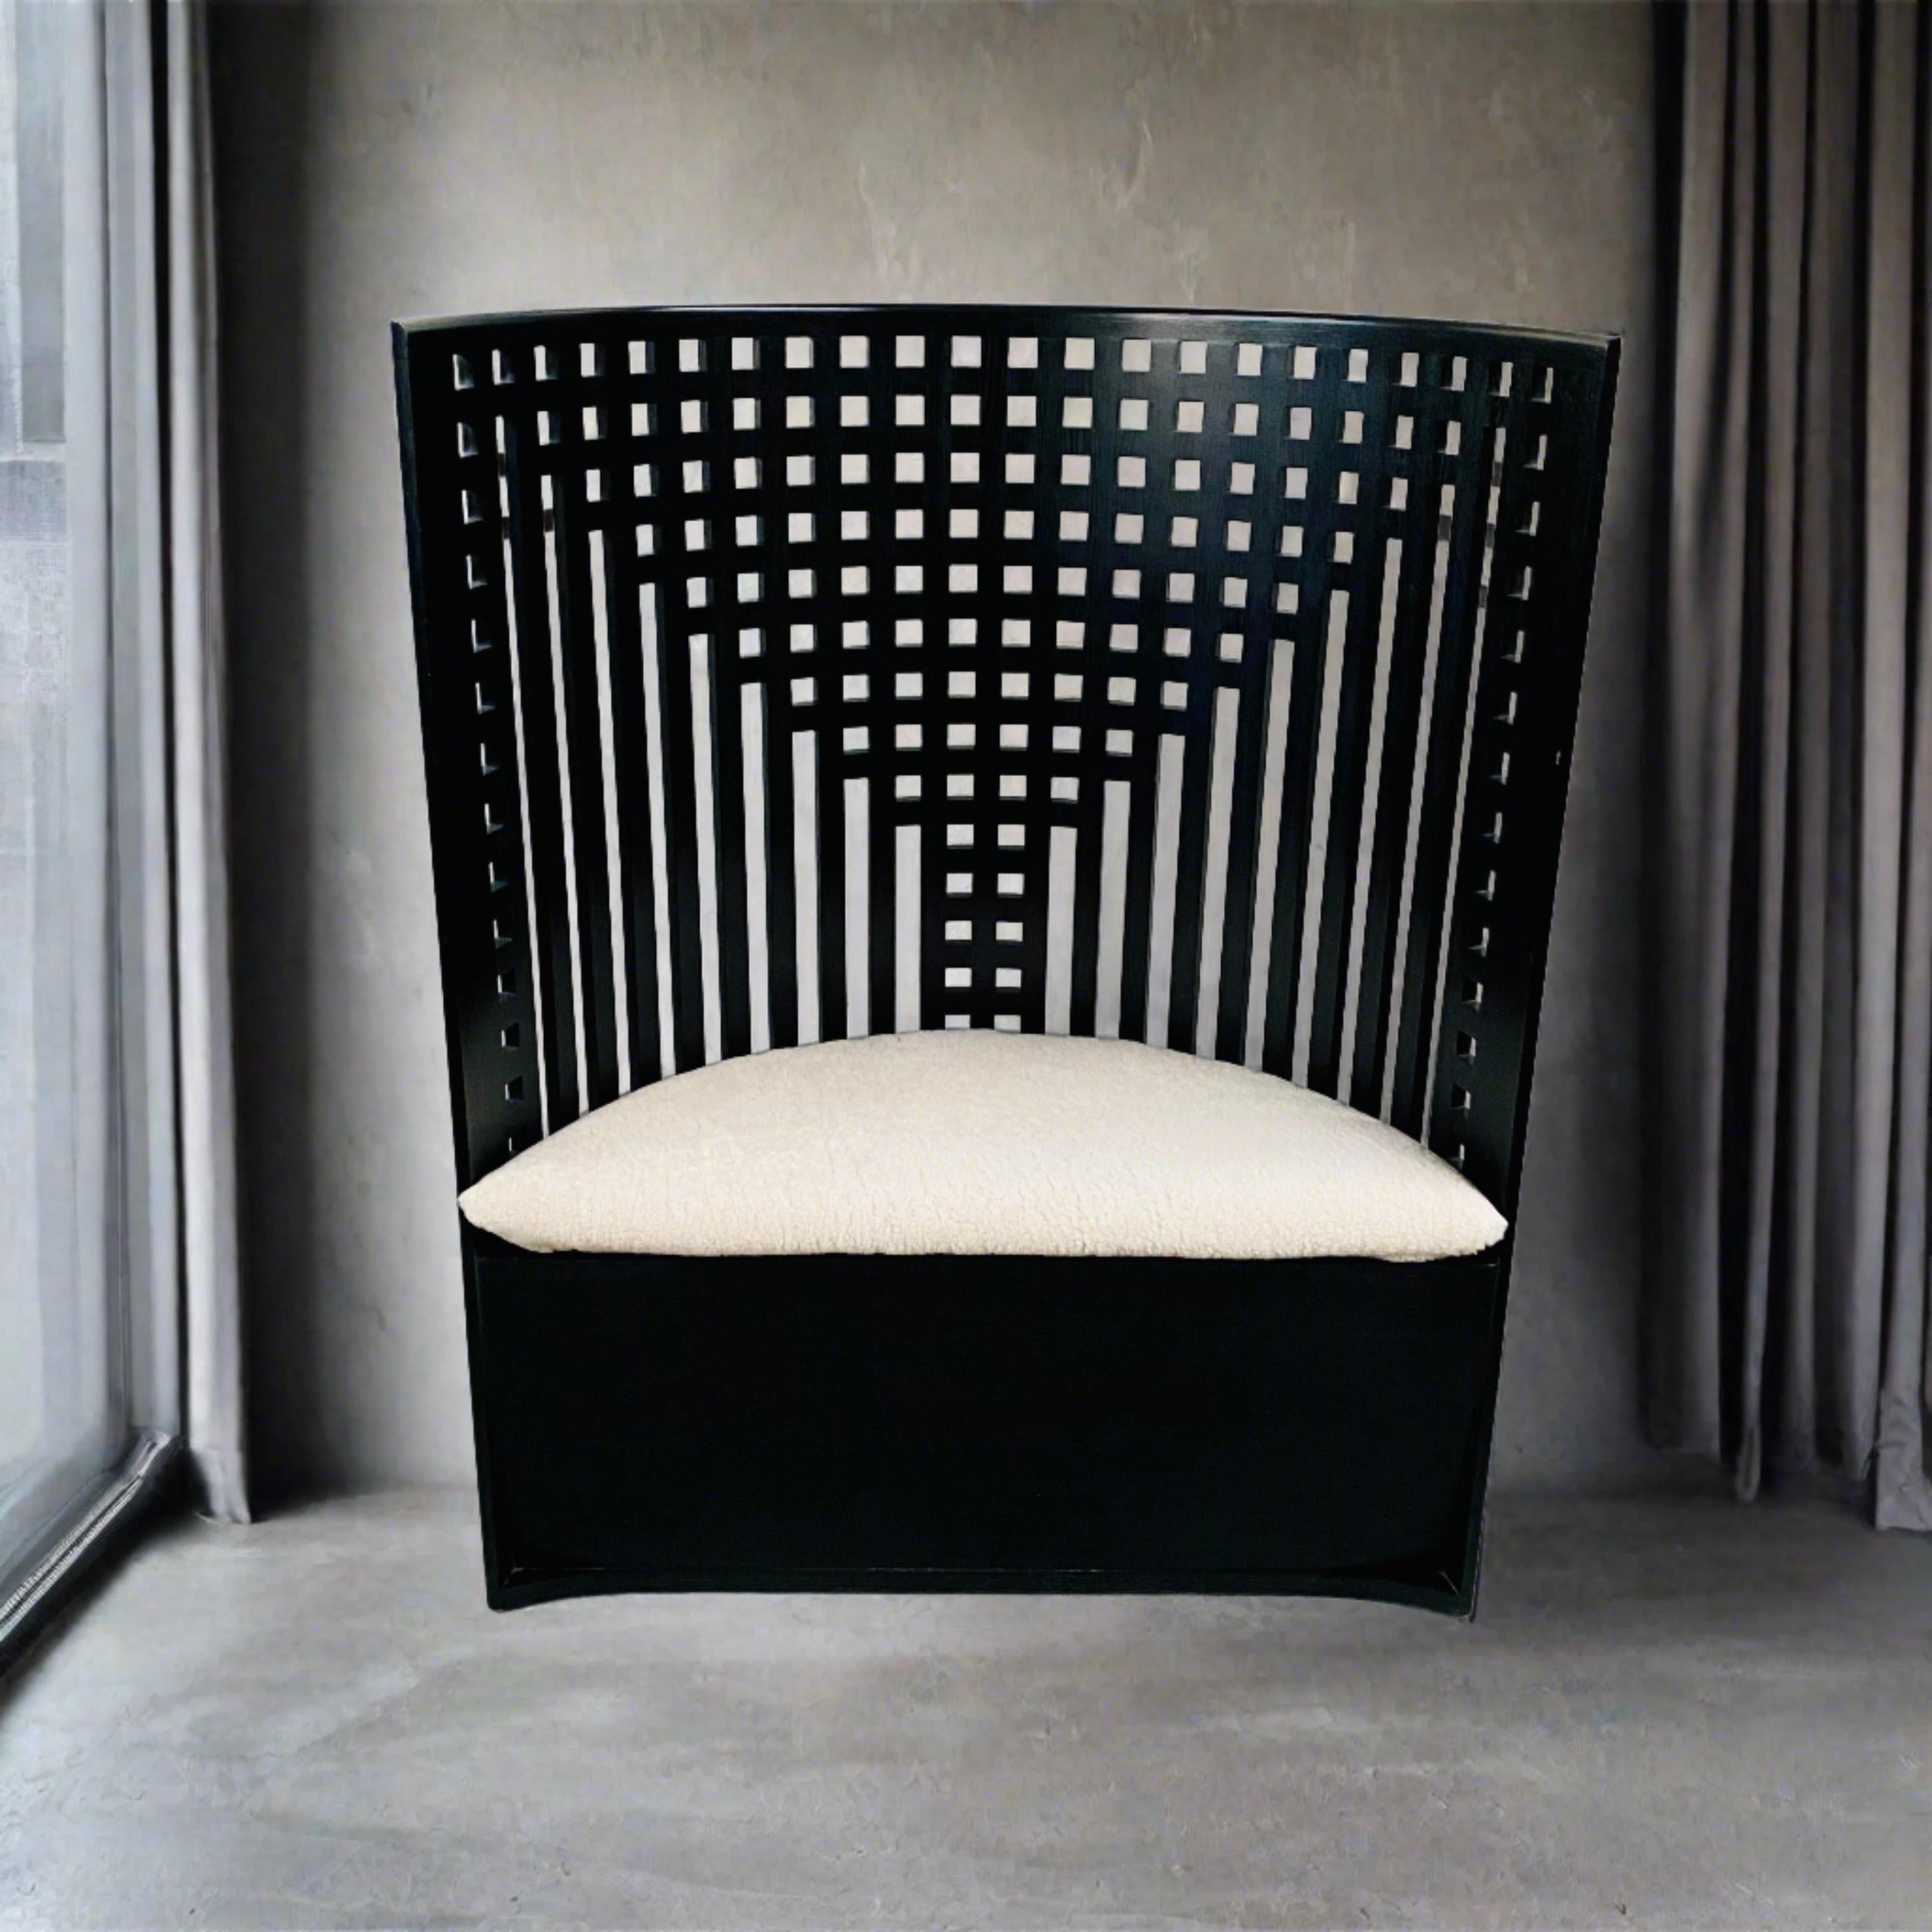 Voici le summum de l'élégance et de l'artisanat : la chaise Cassina en bois de frêne teinté noir de Charles Rennie Mackintosh. Cette pièce exquise, dotée d'un coussin d'assise rembourré en peau de mouton beige de première qualité, mesure 119 cm de